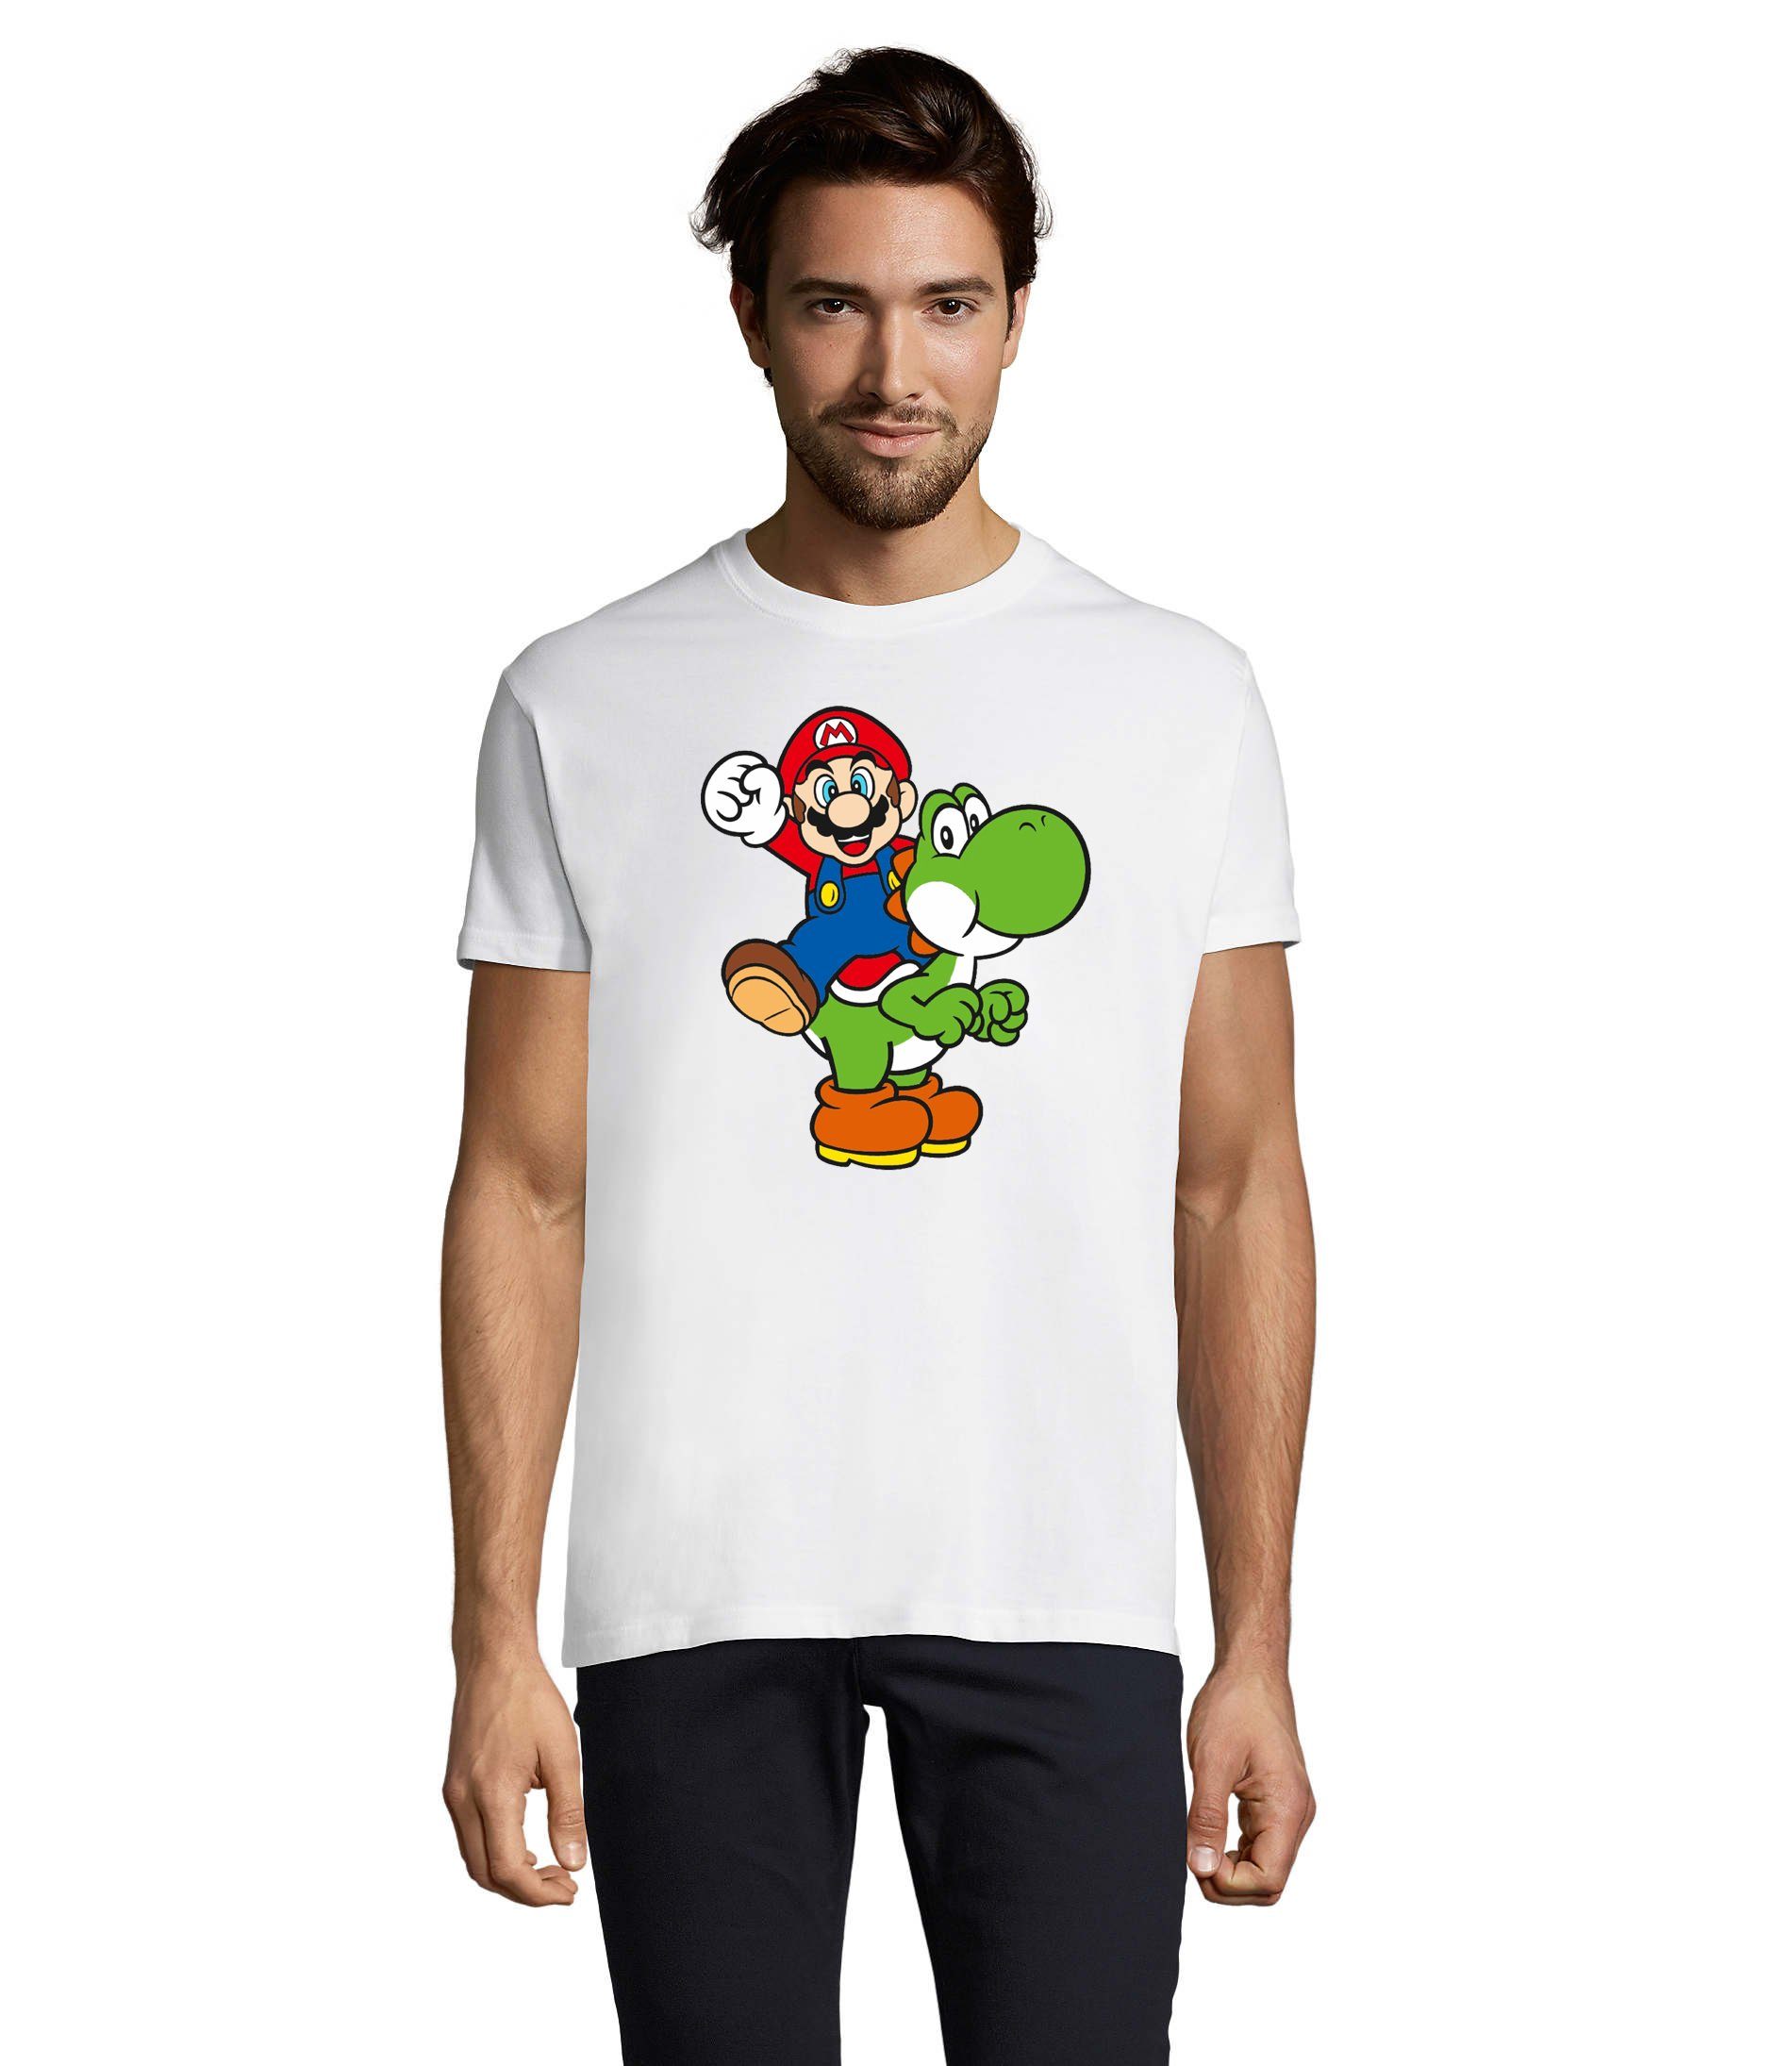 Blondie & Brownie T-Shirt Herren Yoshi & Mario Konsole Super Nintendo Luigi Weiss